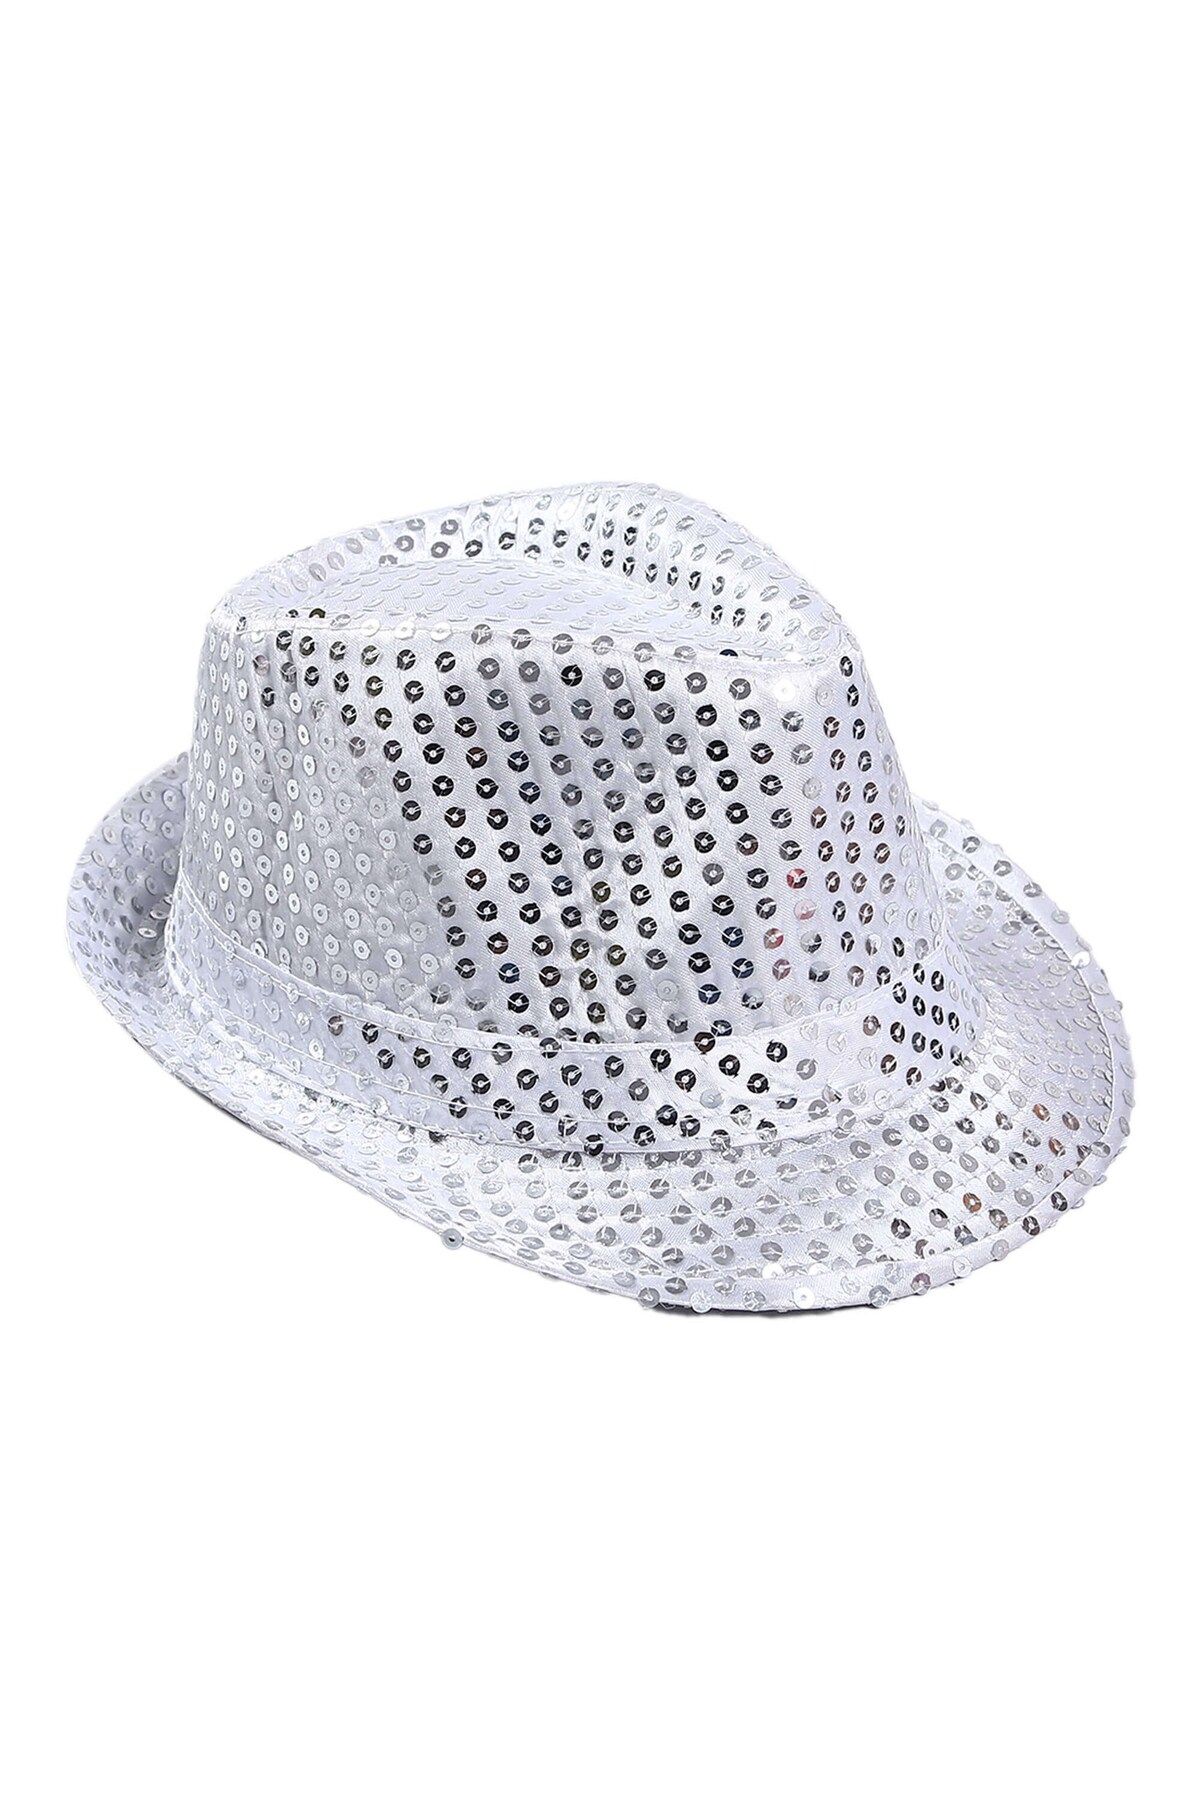 TEKNO İSTANBUL Çocuk Boy Gümüş Payetli Şapka Gösteri Şapkası Michael Jackson Şapkası 54 No